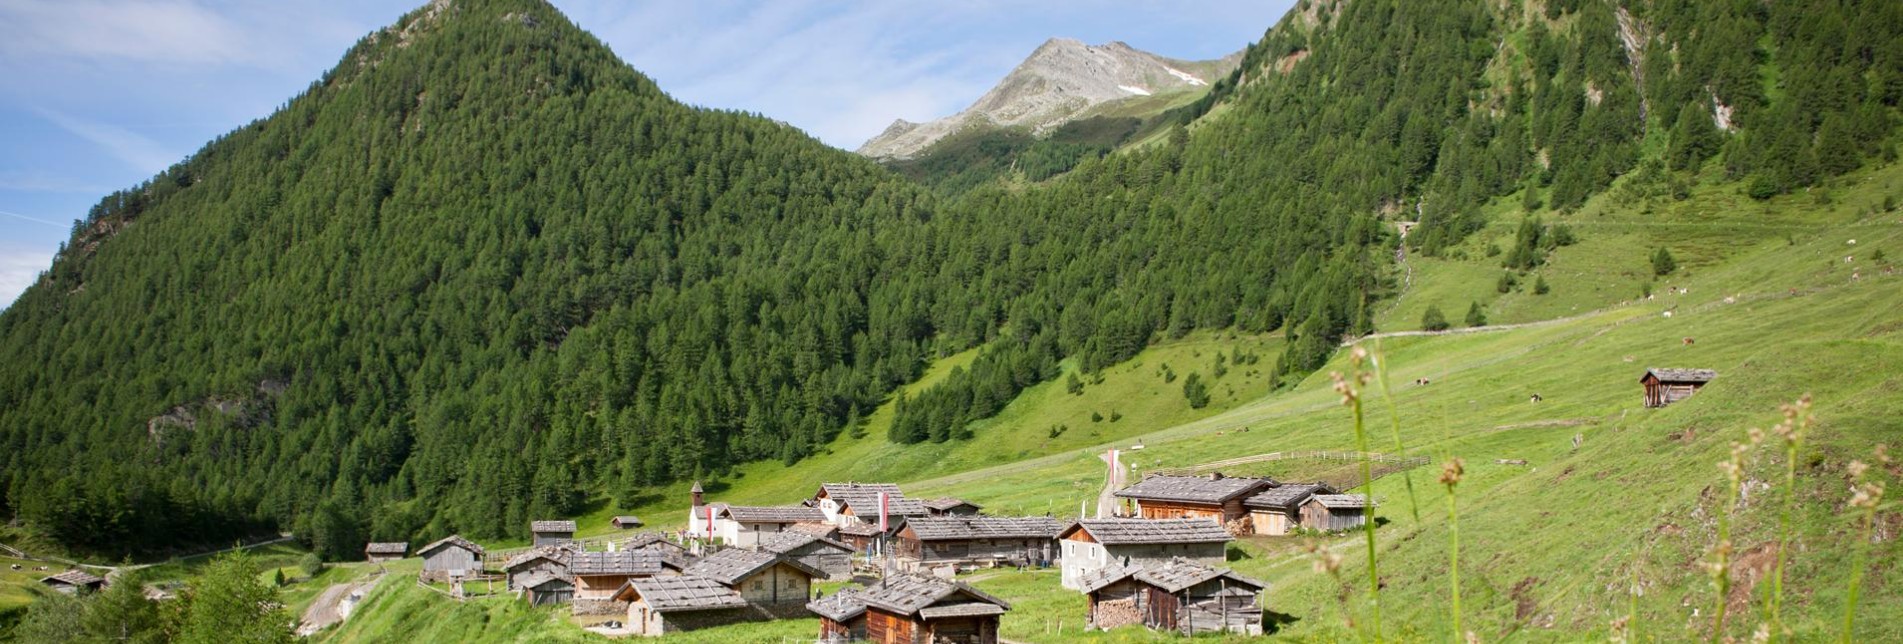 Malga Fanes Valles - Alto Adige